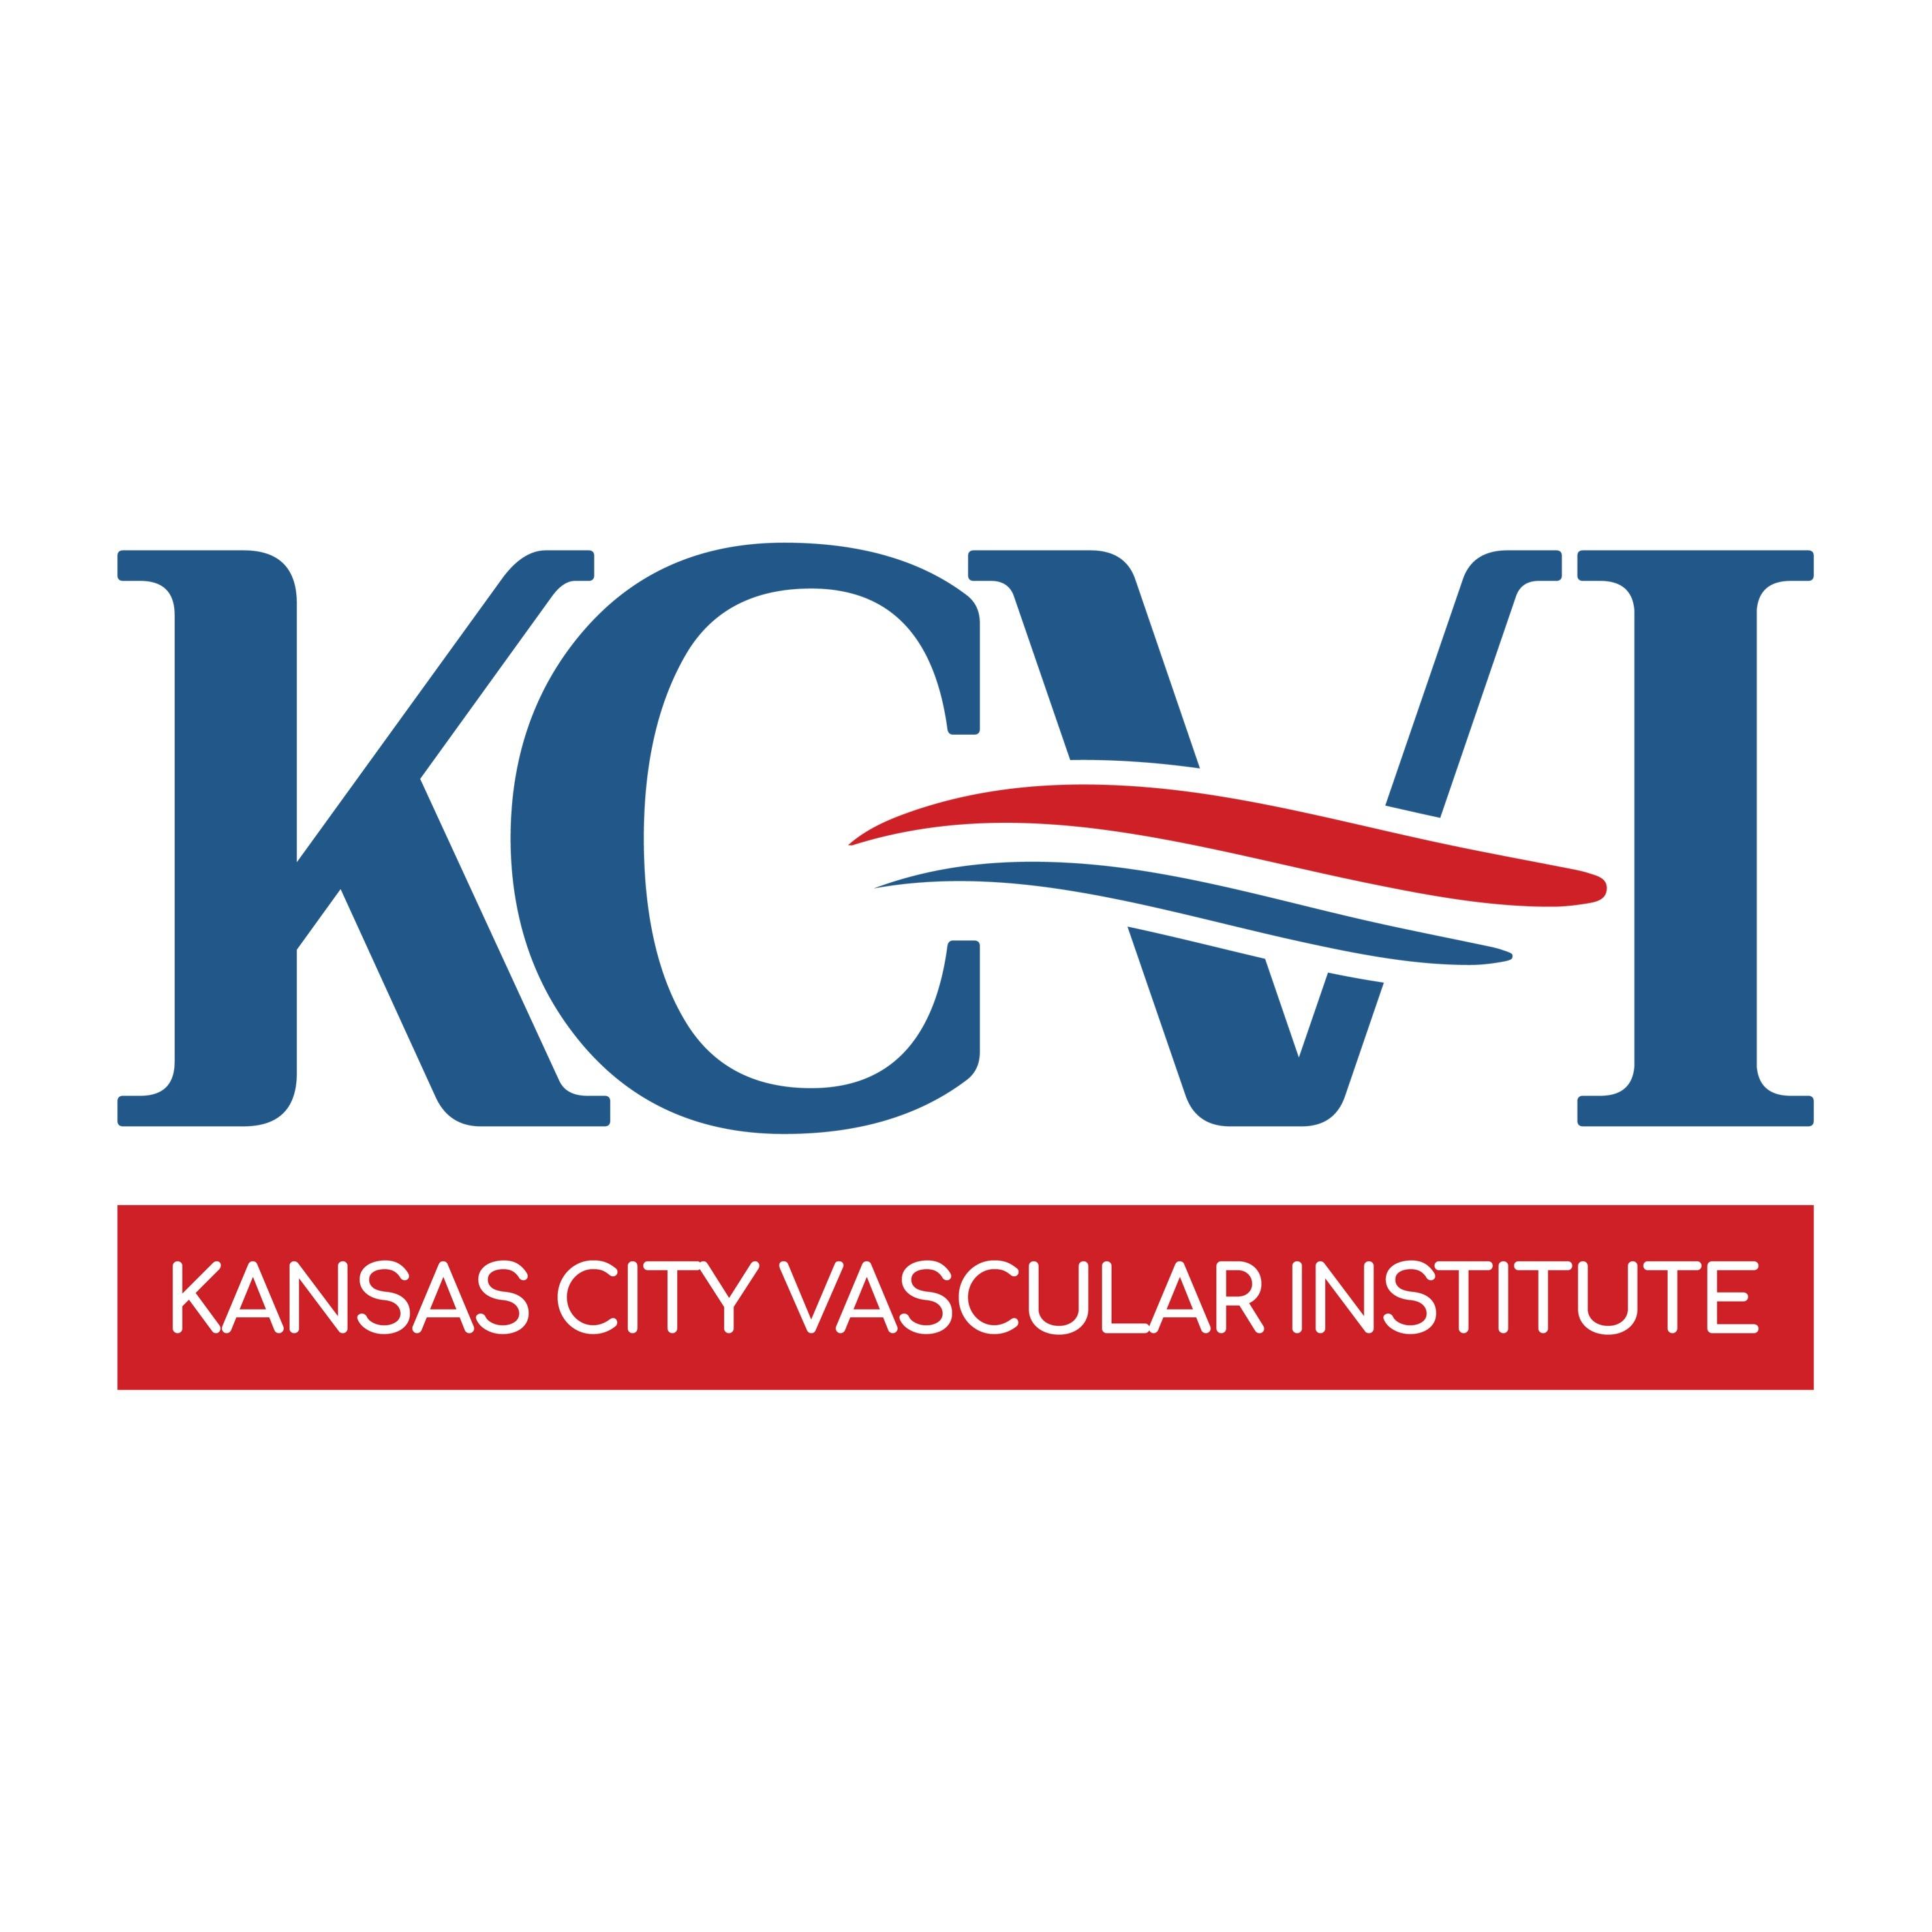 Kansas City Vascular Institute